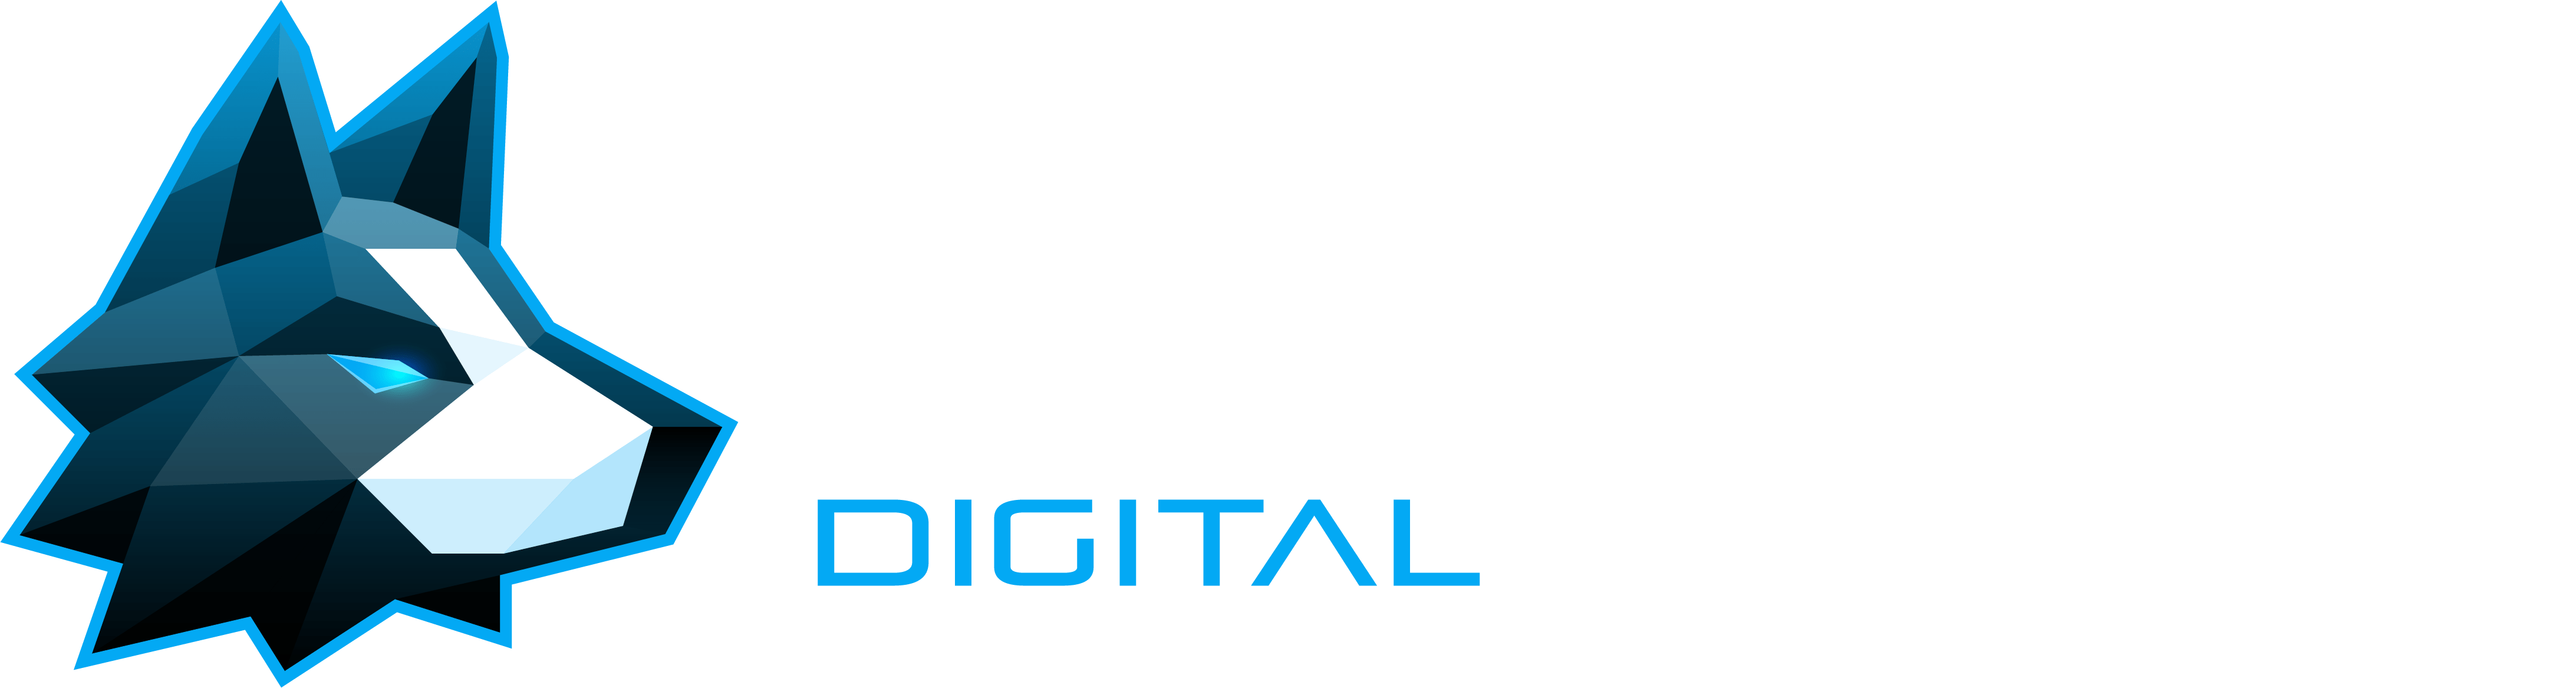 Sheepdog Digital